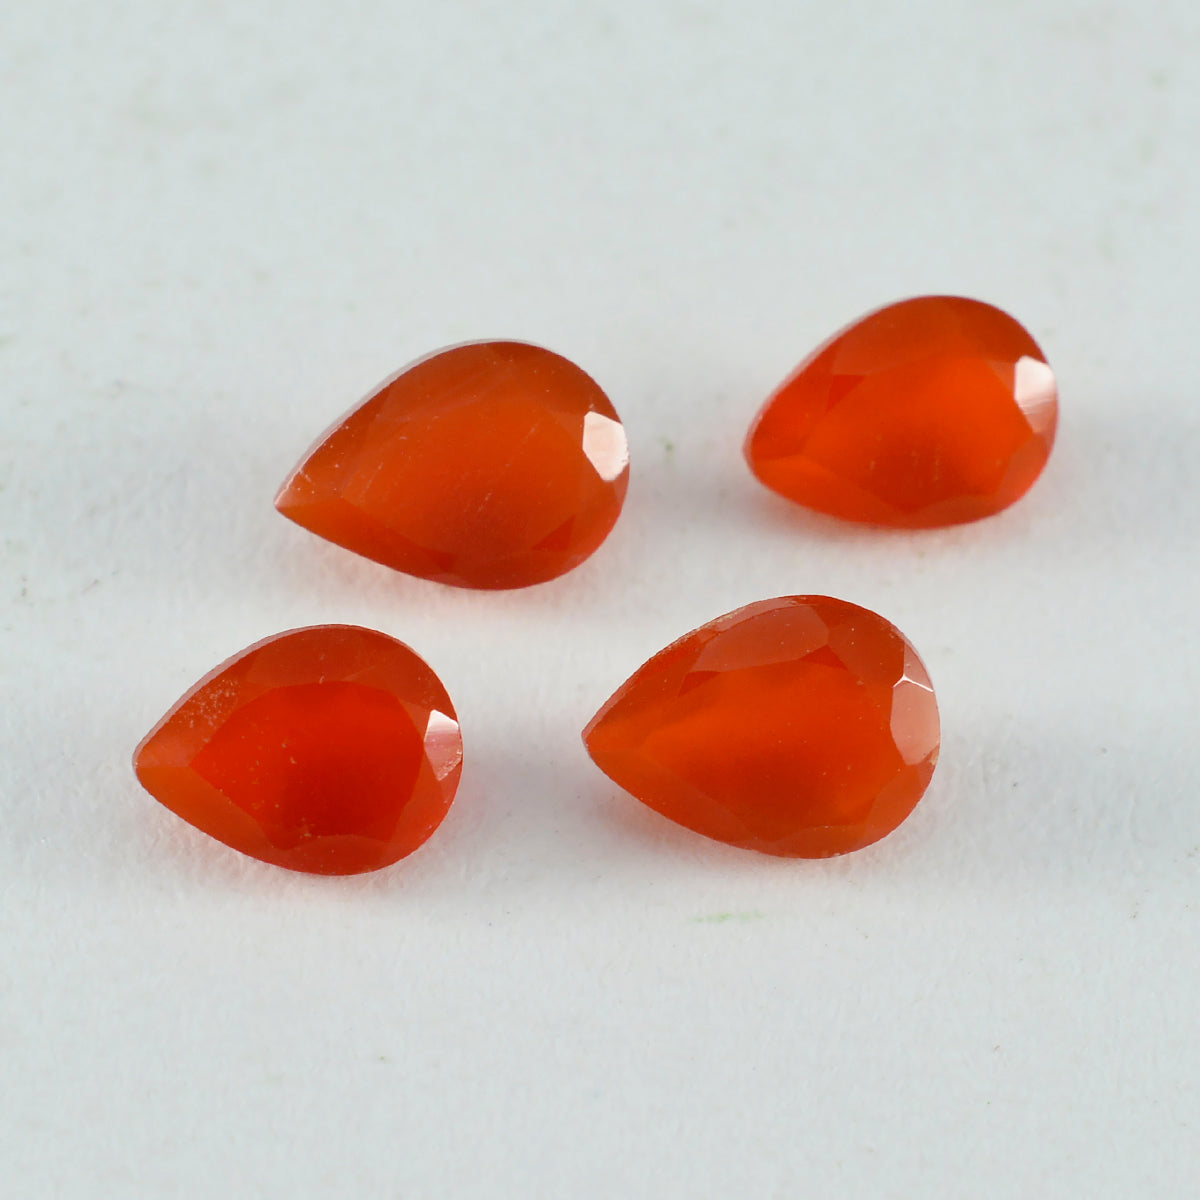 riyogems 1 шт. настоящий красный оникс ограненный 8x12 мм грушевидной формы красивые качественные драгоценные камни